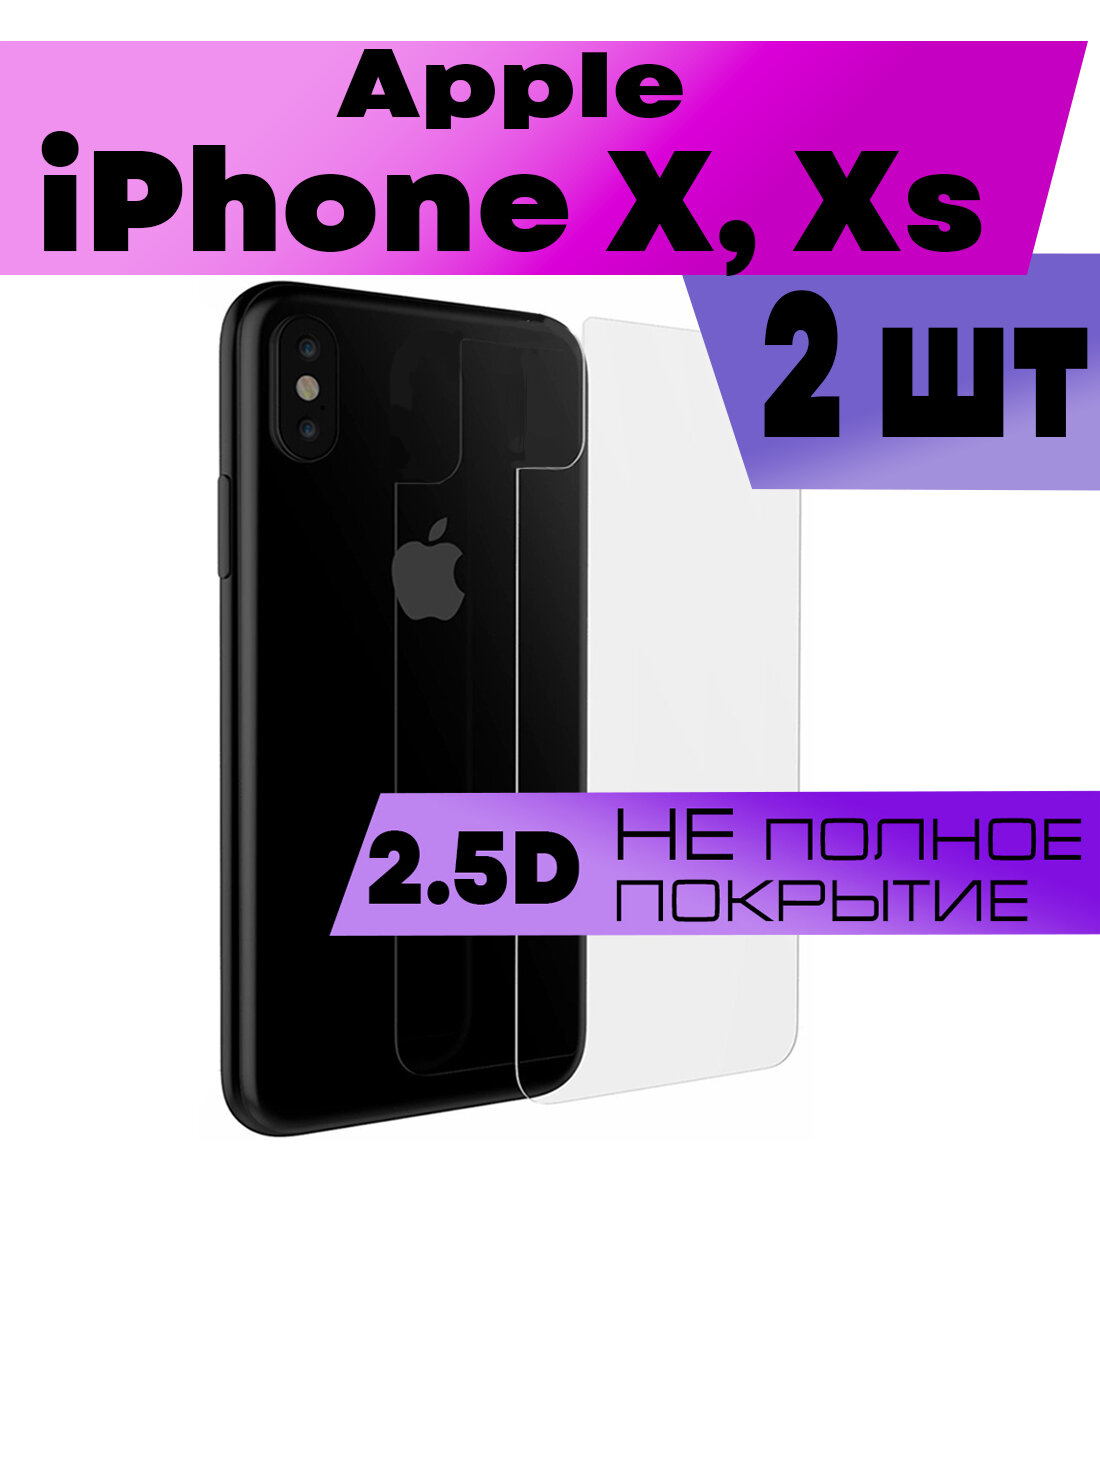 Комплект 2шт, Защитное стекло BUYOO 2D для Apple iPhone X, Xs, Айфон Хс (плоское, на заднюю панель)